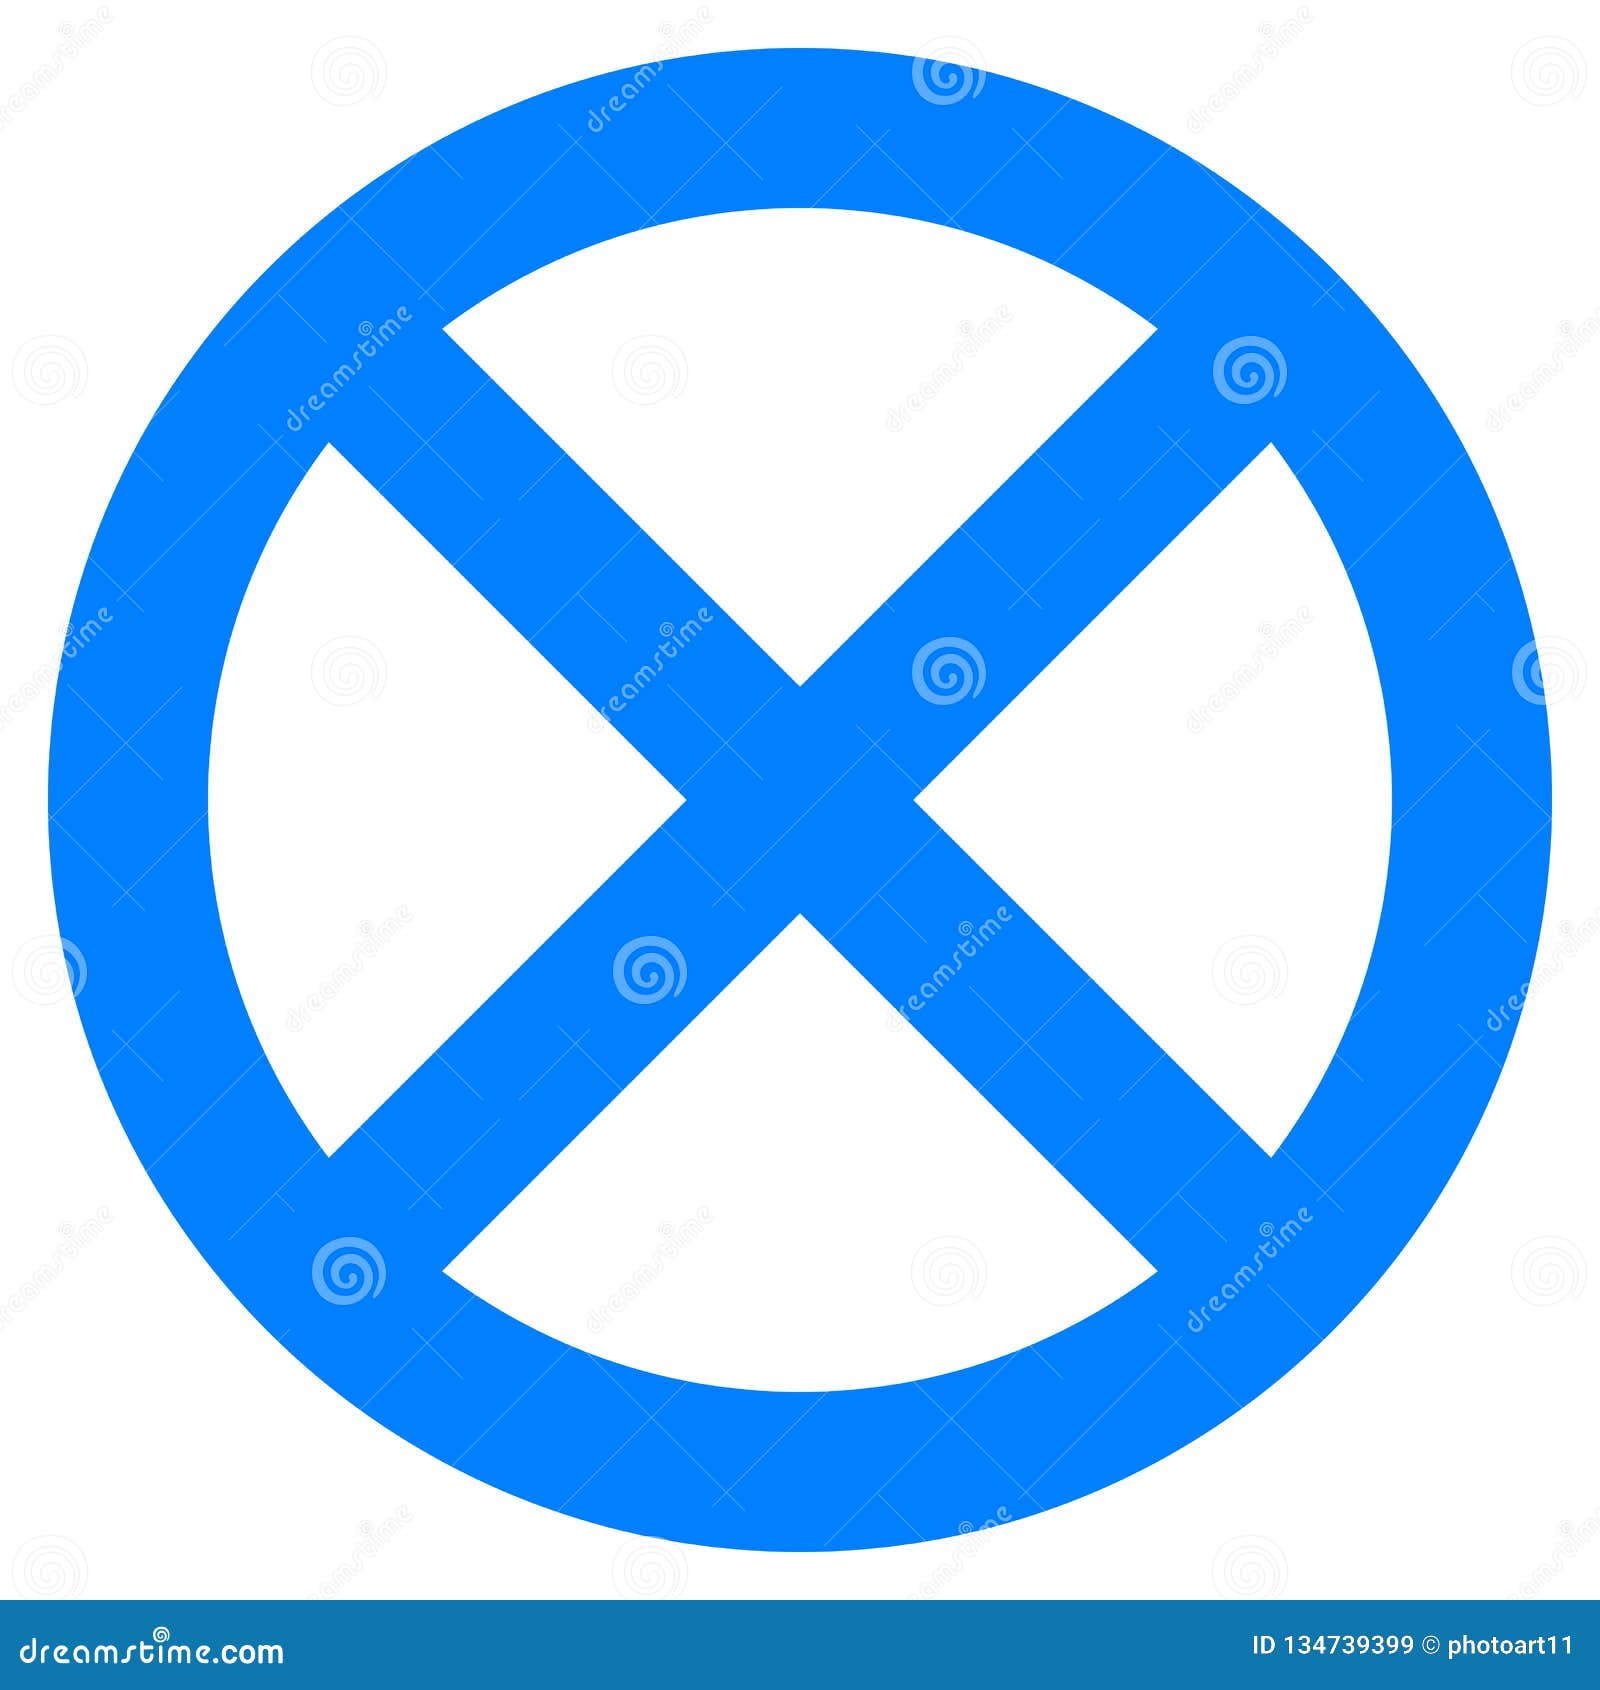 Знак круг с полосой. Перечеркнутый синий круг. Знак круглый синий перечеркнутый. Дорожный знак перечеркнутый круг. Синий знак с белой полосой перечеркнут.